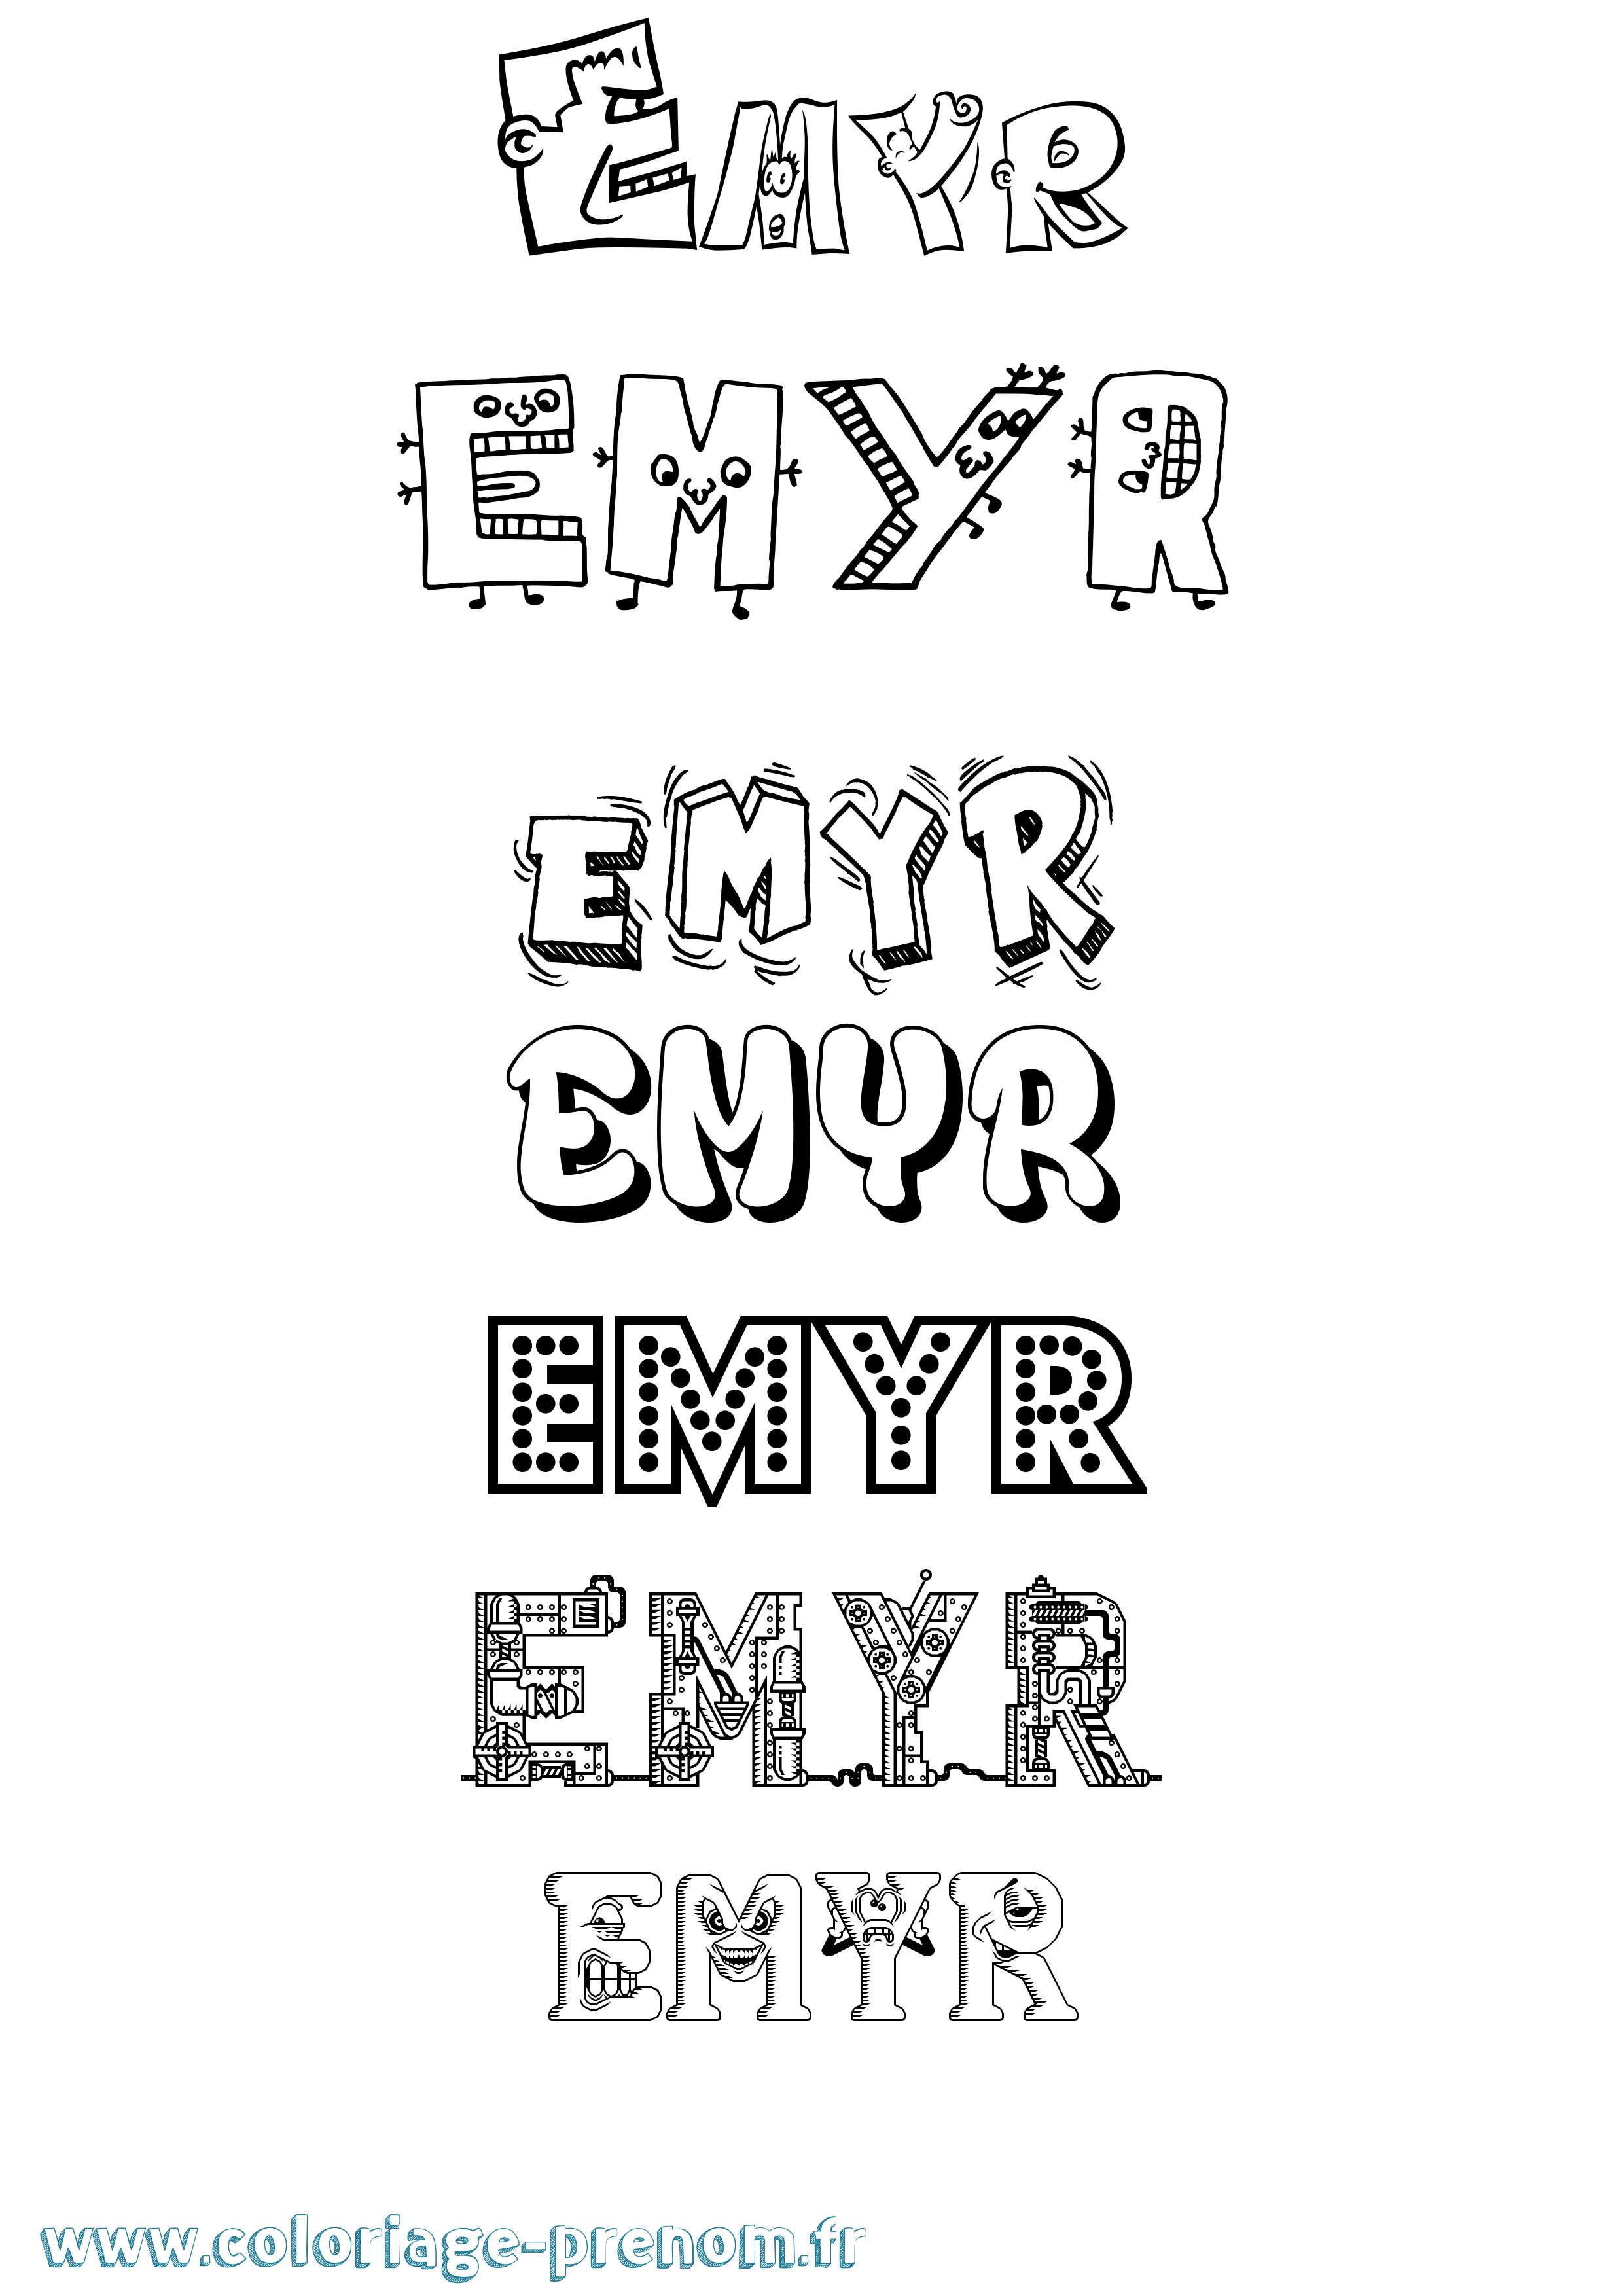 Coloriage prénom Emyr Fun